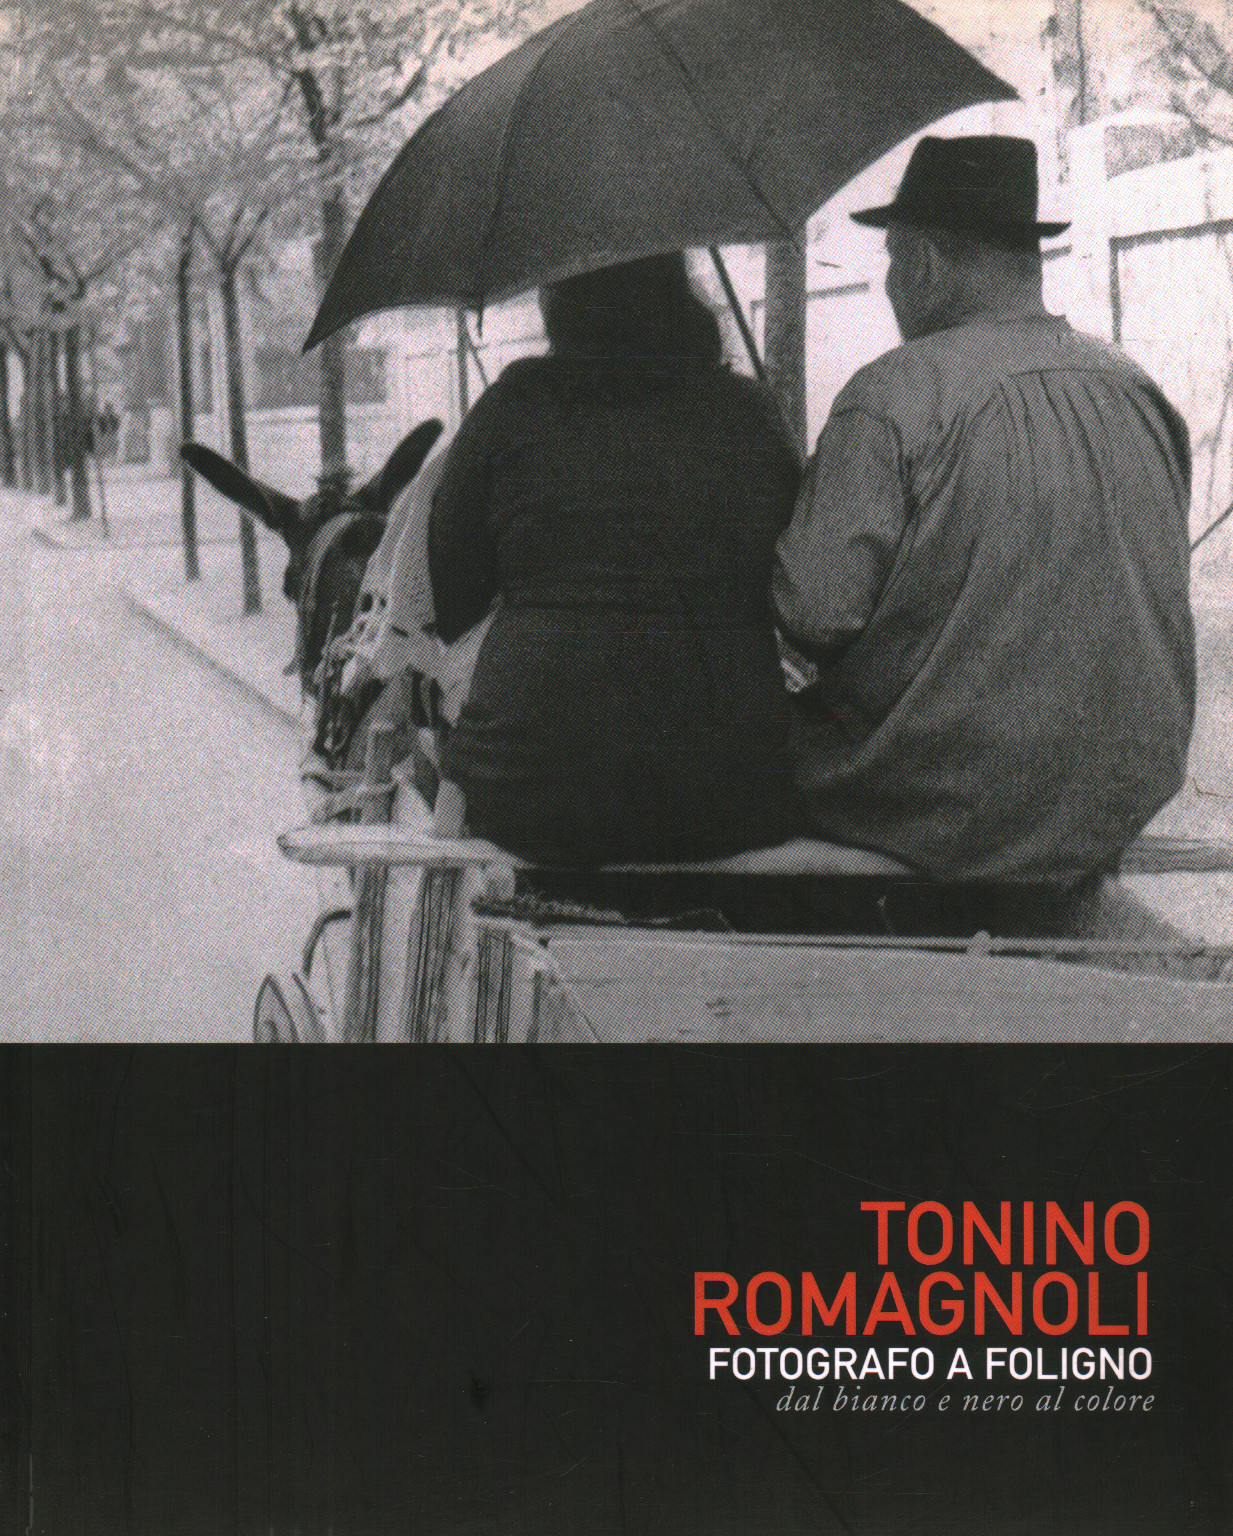 Tonino Romagnoli. Photographer in Foligno. White , s.a.